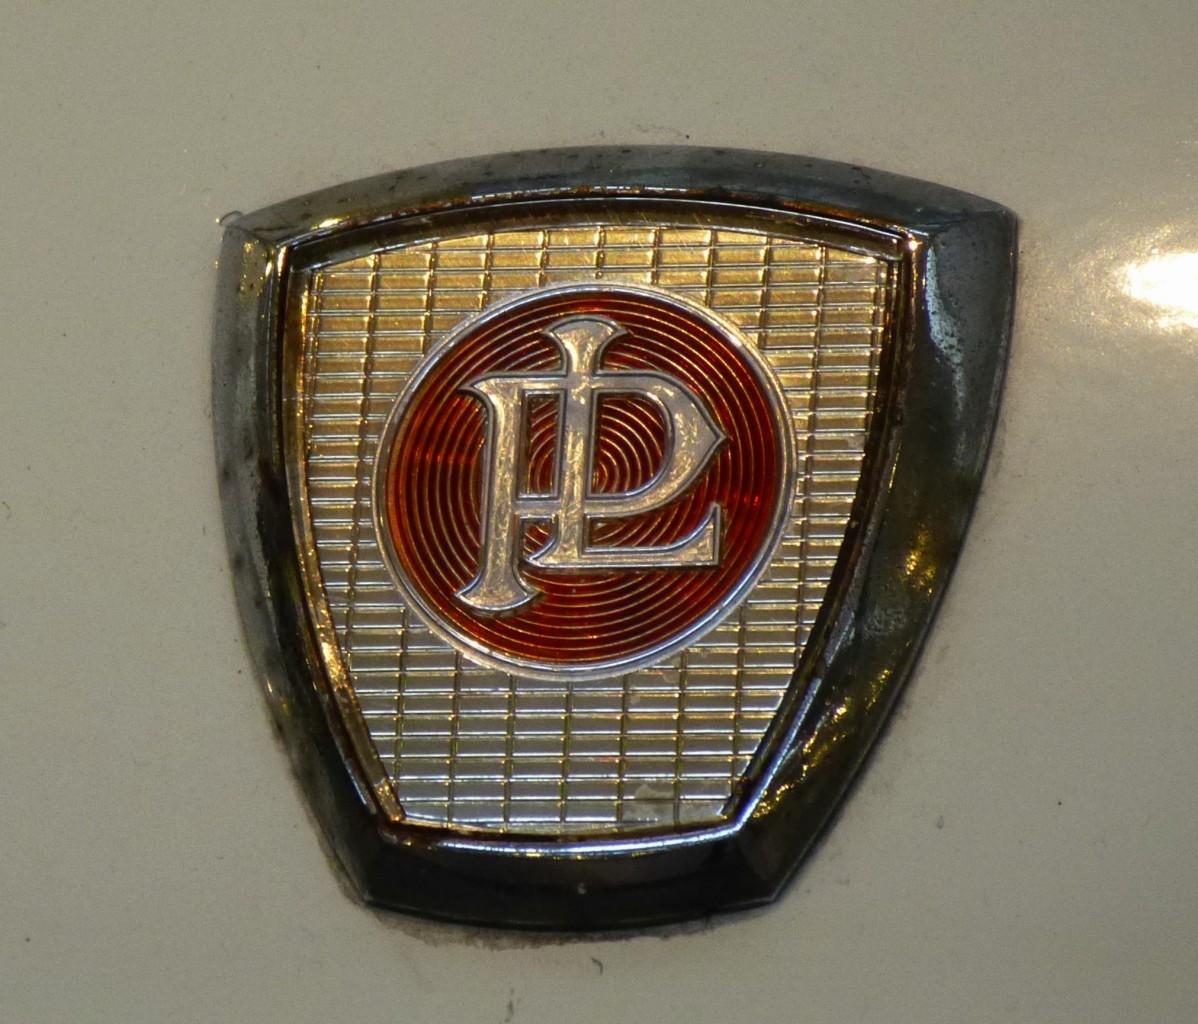 Panhard-Levassor, Kühleremblem auf auf einem Sportcoupe von 1964, der französische Autobauer gehört zu den ältesten weltweit, 1886 in Paris gegründet, bestand bis 1967, Nov.2013 